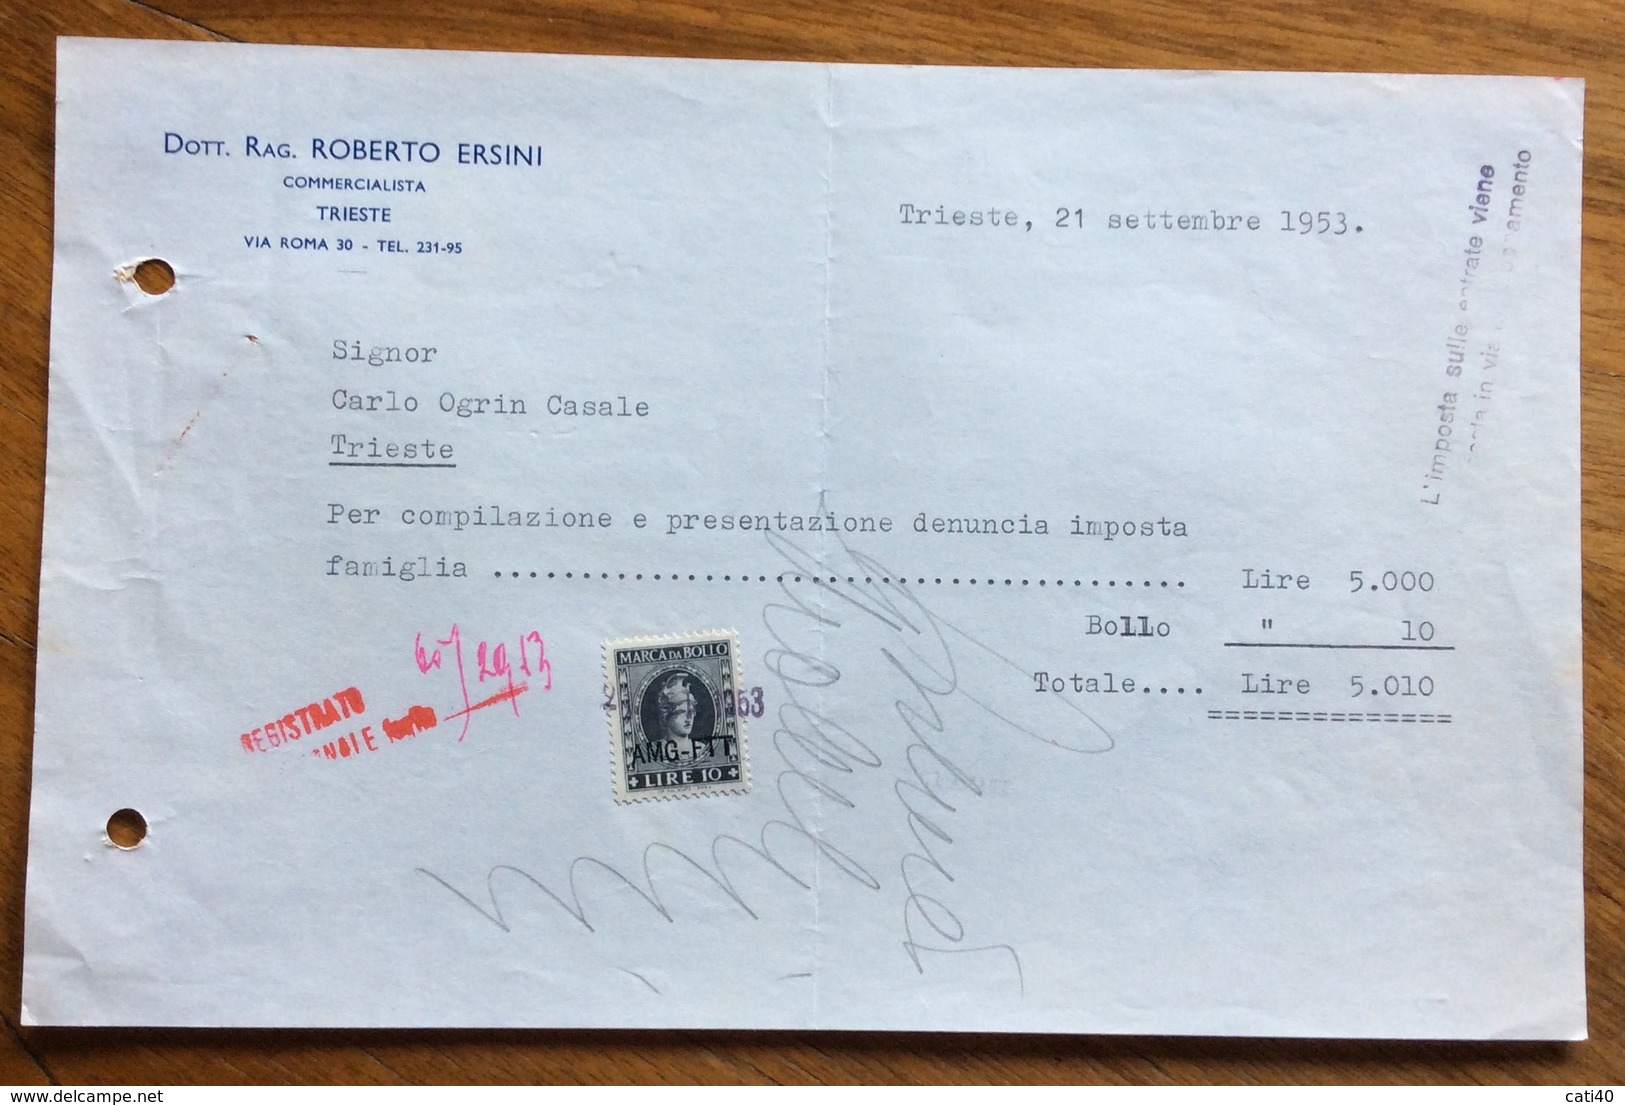 TRIESTE  - AMG FTT - MARCHE DA BOLLO SU DOCUMENTO : FATTURA DOTT.RAG.ROBERTO ERSINI - 21/9/53 - Revenue Stamps